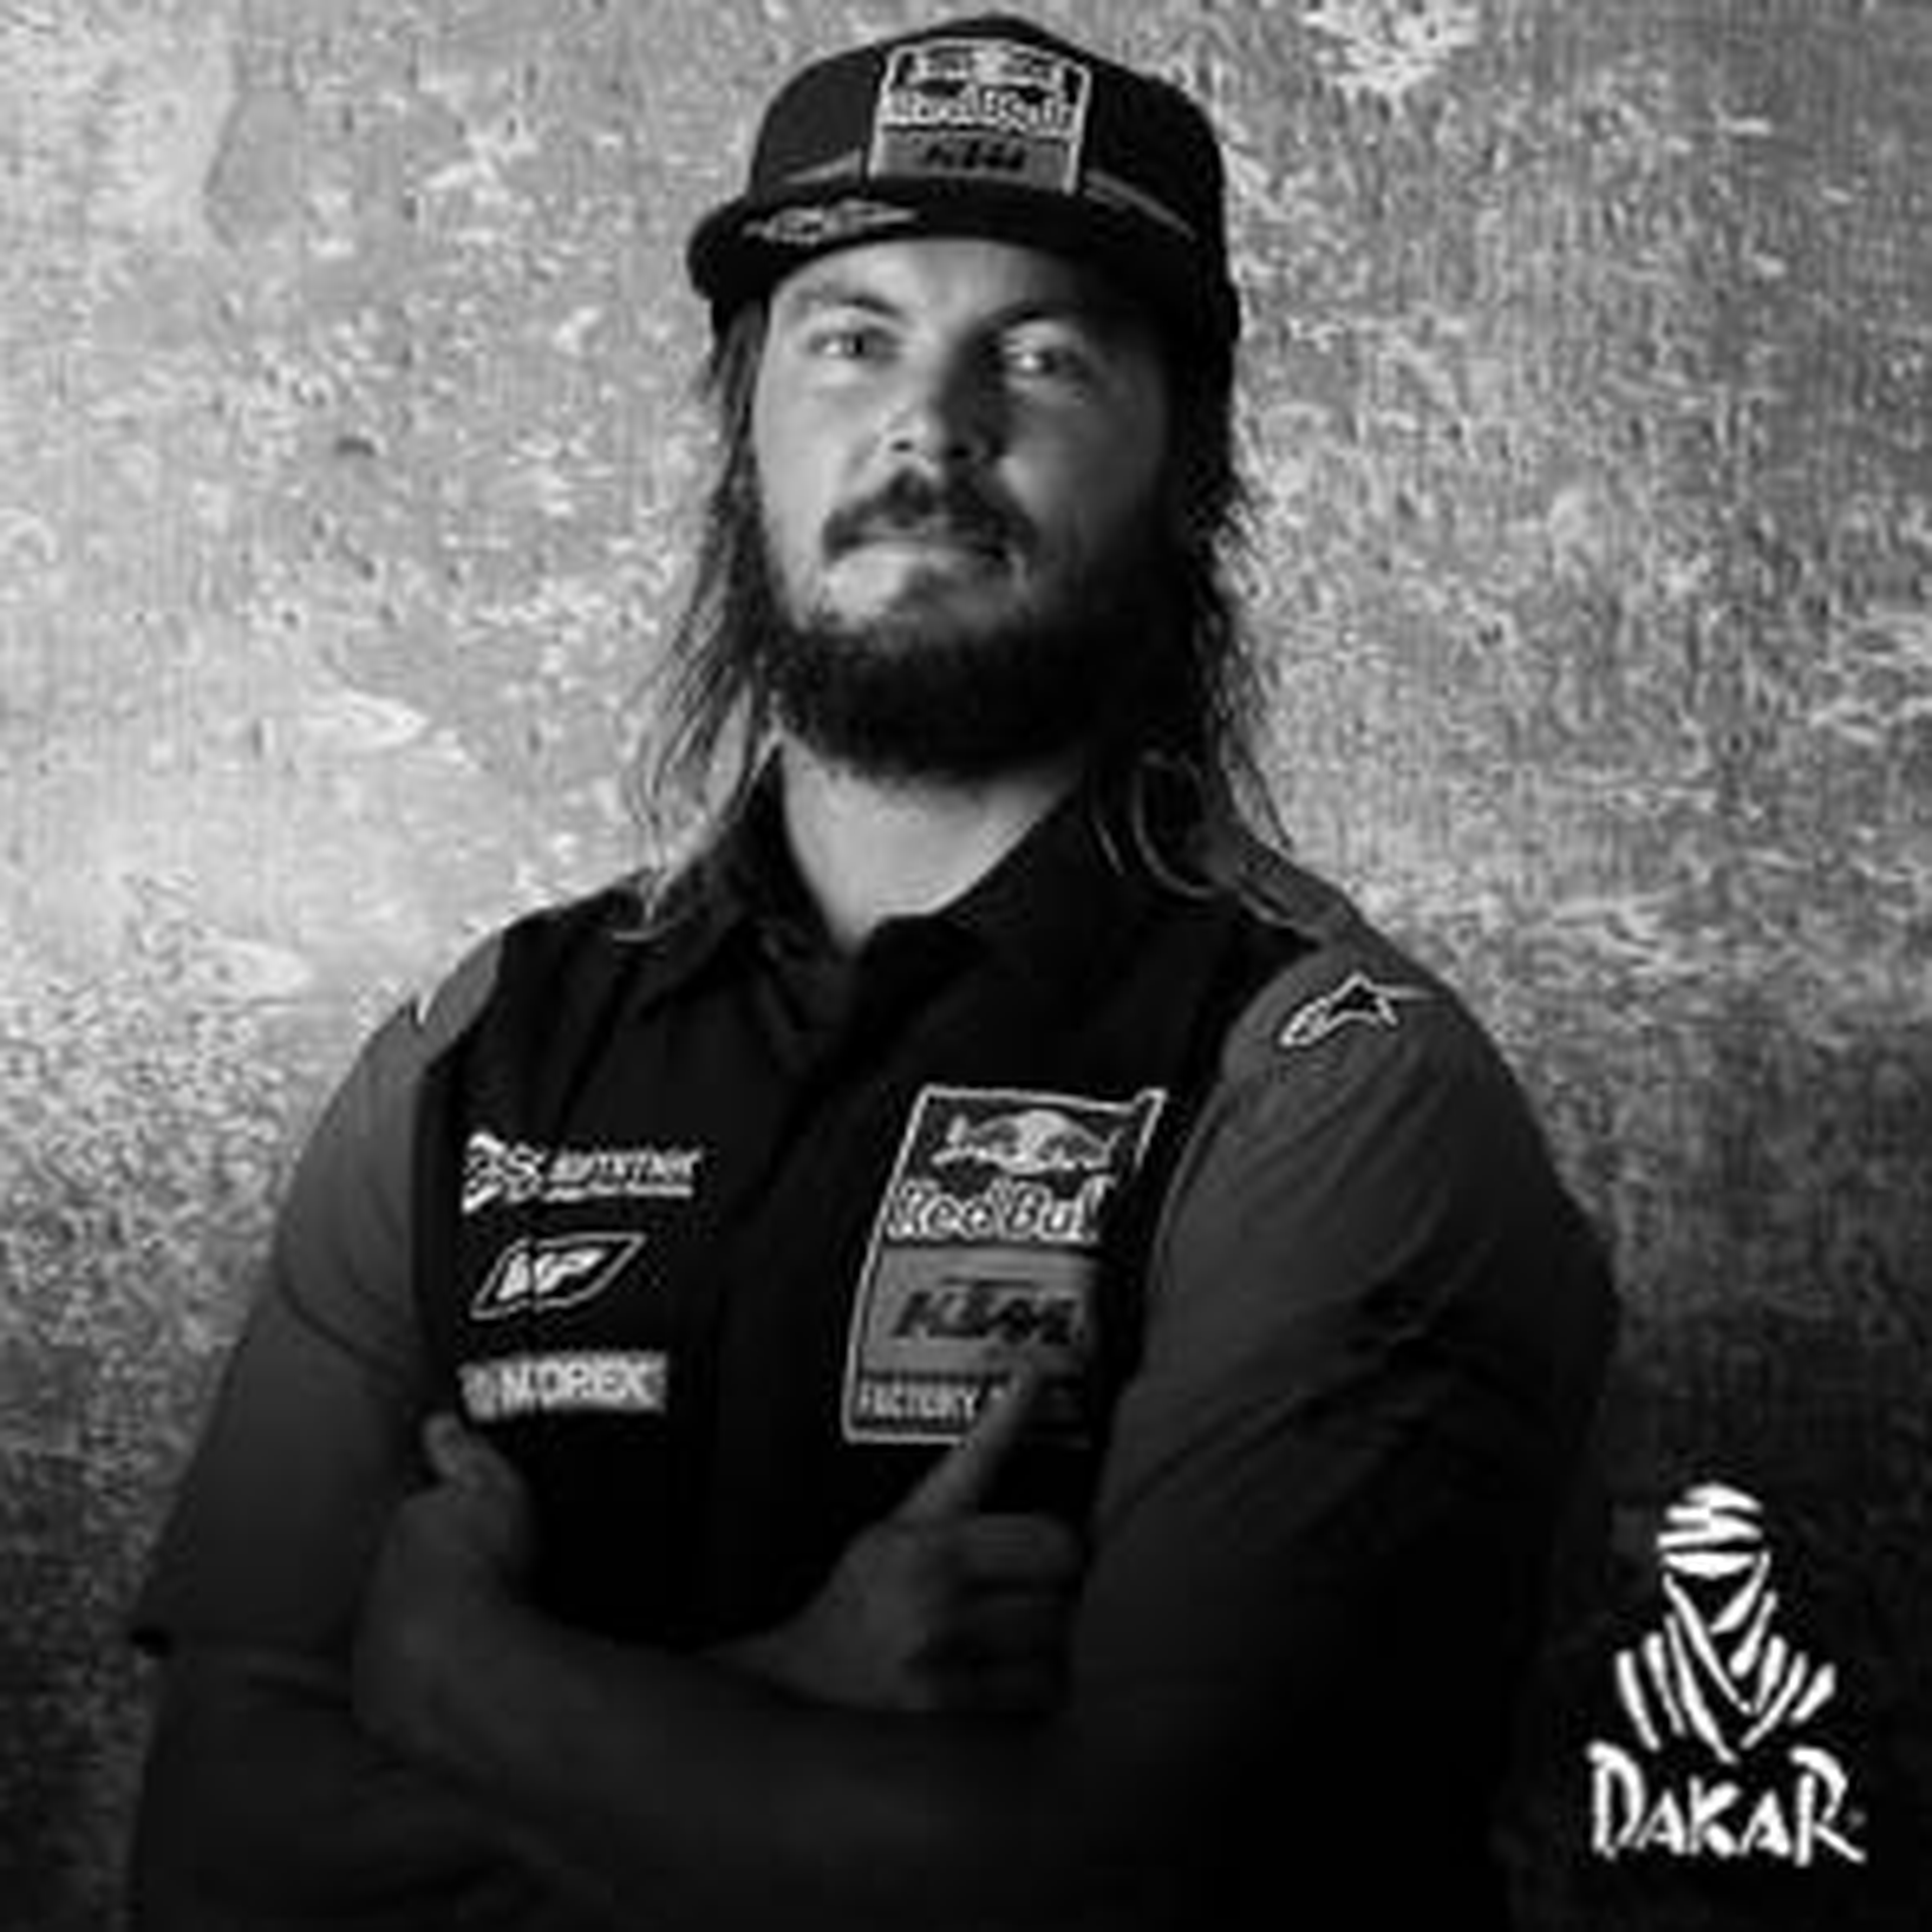 Toby Price Dakar 2019